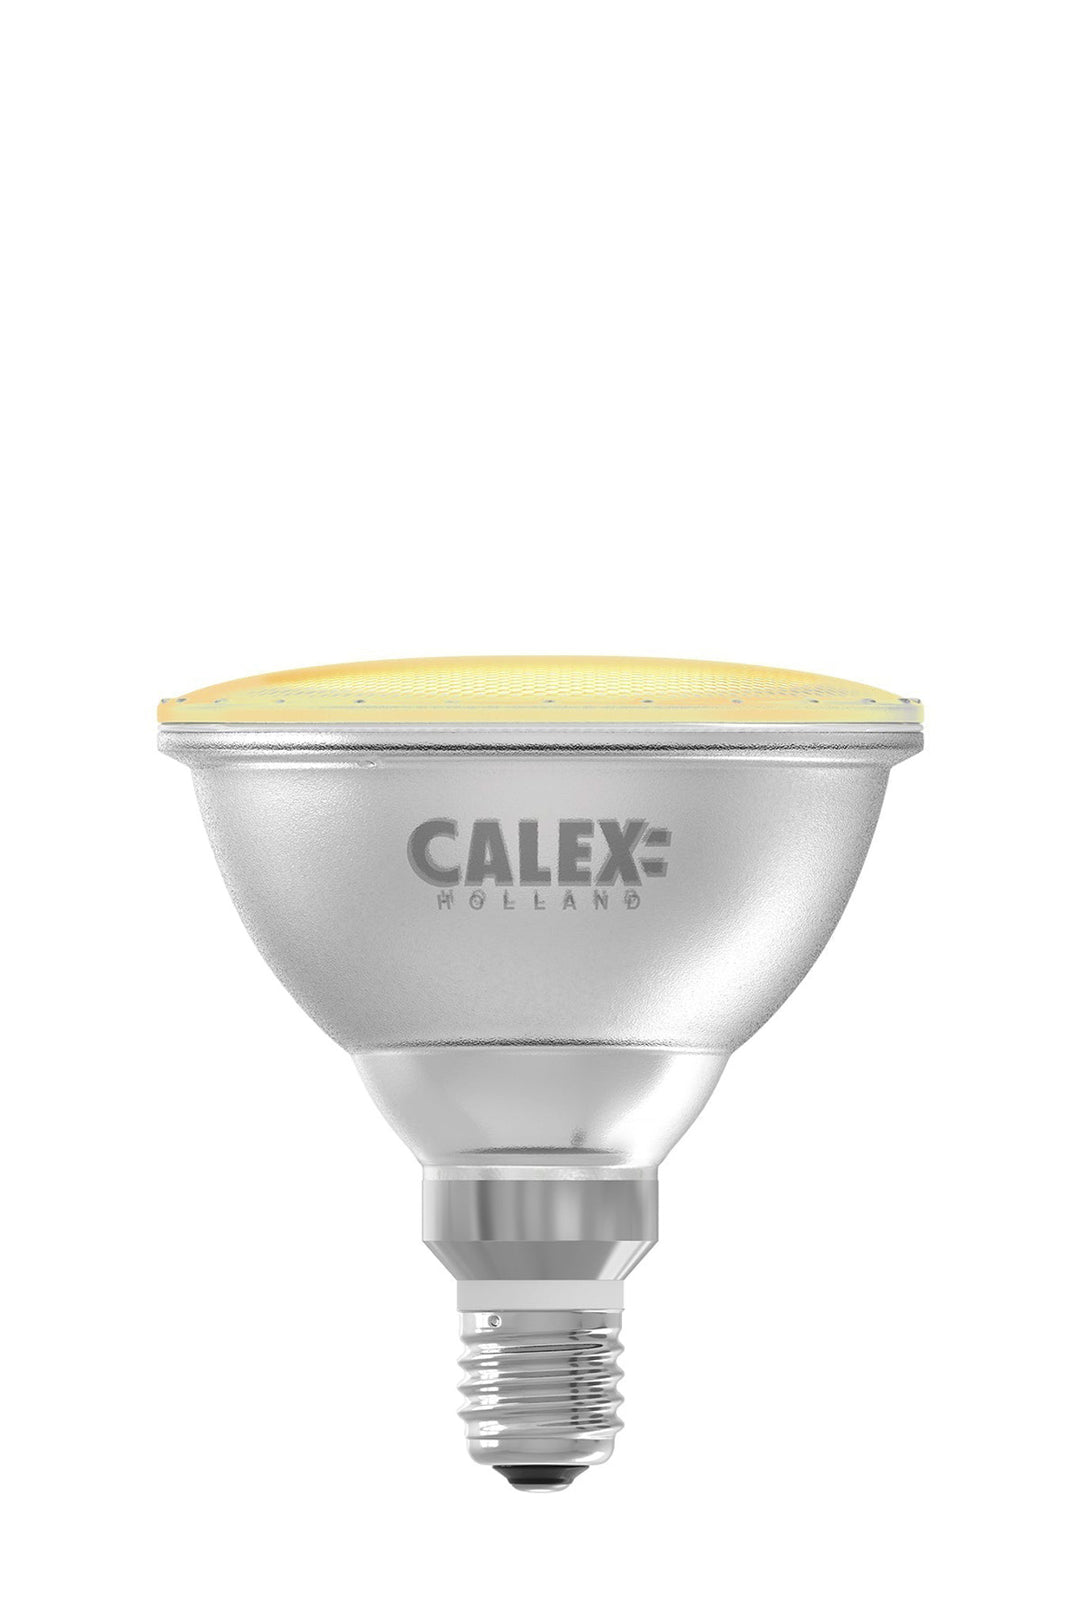 Calex LED SMD PAR 38, E27, Non-Dimmable 1801000500